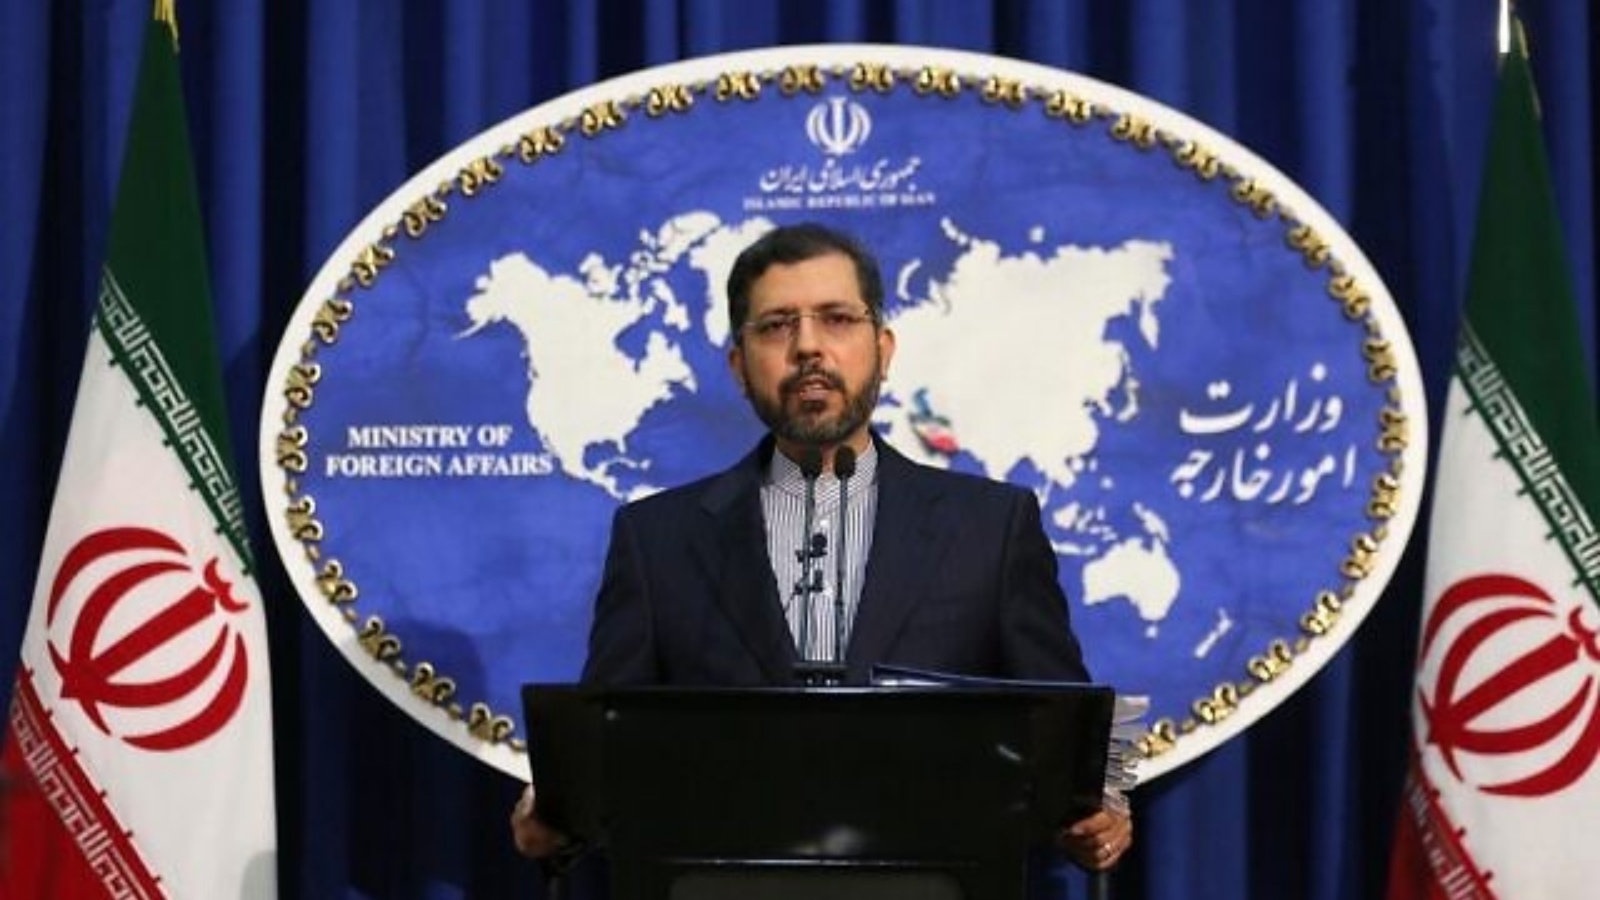 المتحدث باسم الخارجية الإيرانية سعيد خطيب زاده خلال مؤتمر صحفي في طهران. 22 شباط/فبراير 2021.